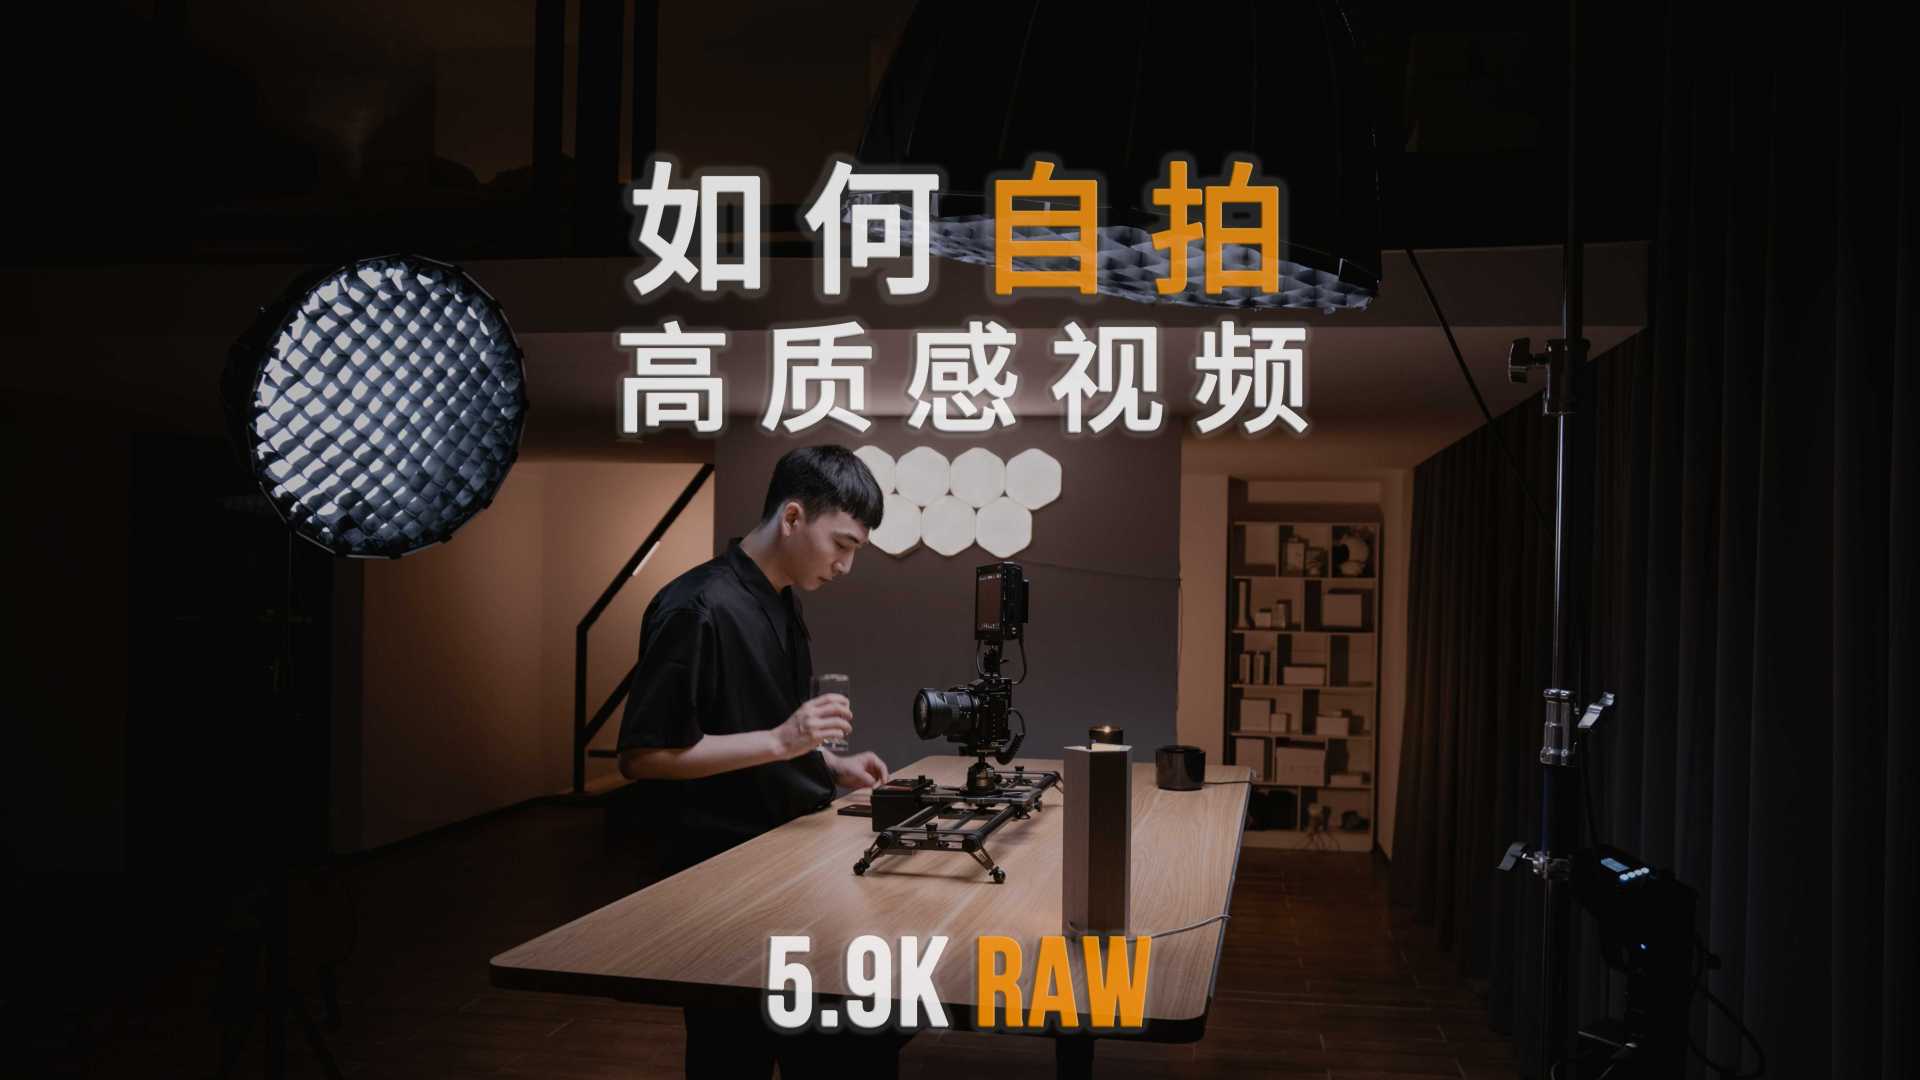 拍摄教学: 如何自拍高质感视频? 分享我的5.9K Raw自拍套装